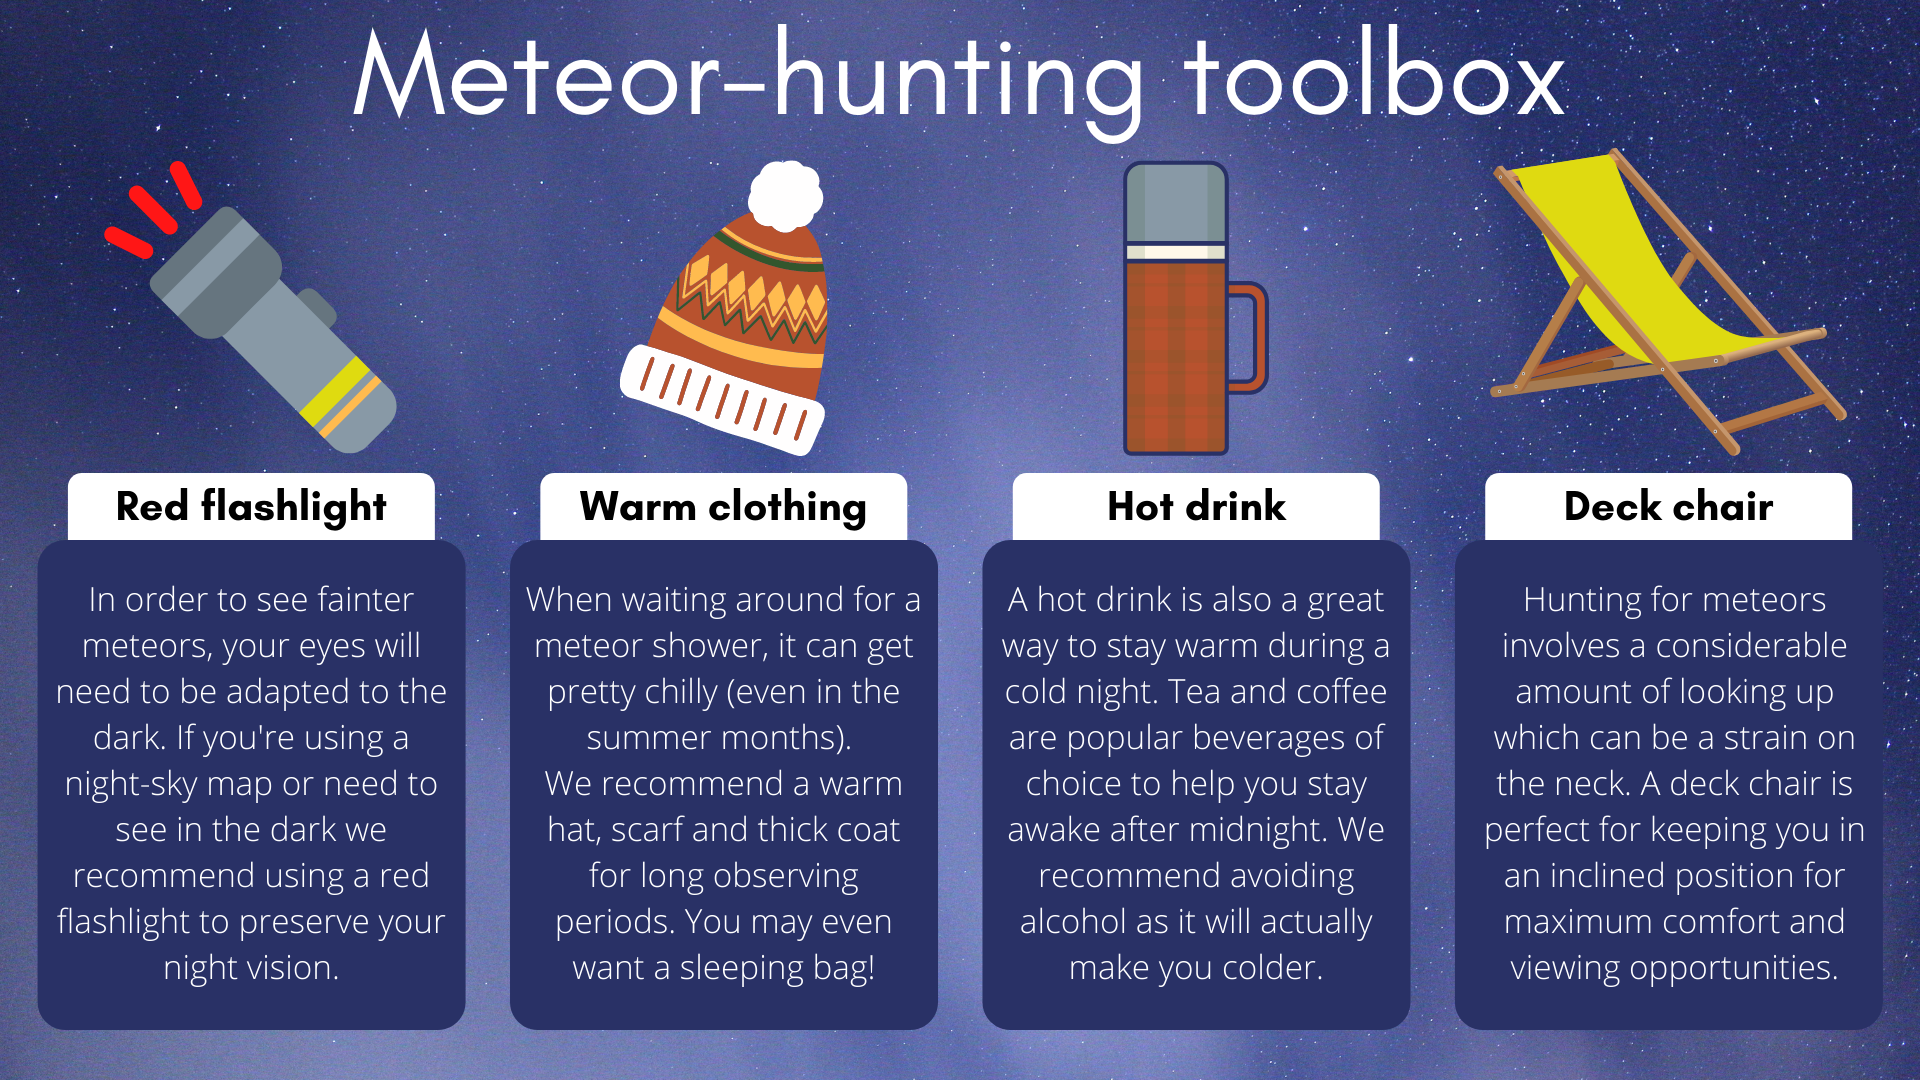 A tökéletes meteorvadászat élményéhez referencia zseblámpára, meleg ruhára, forró italra és egy szép nyugágyra lesz szüksége.